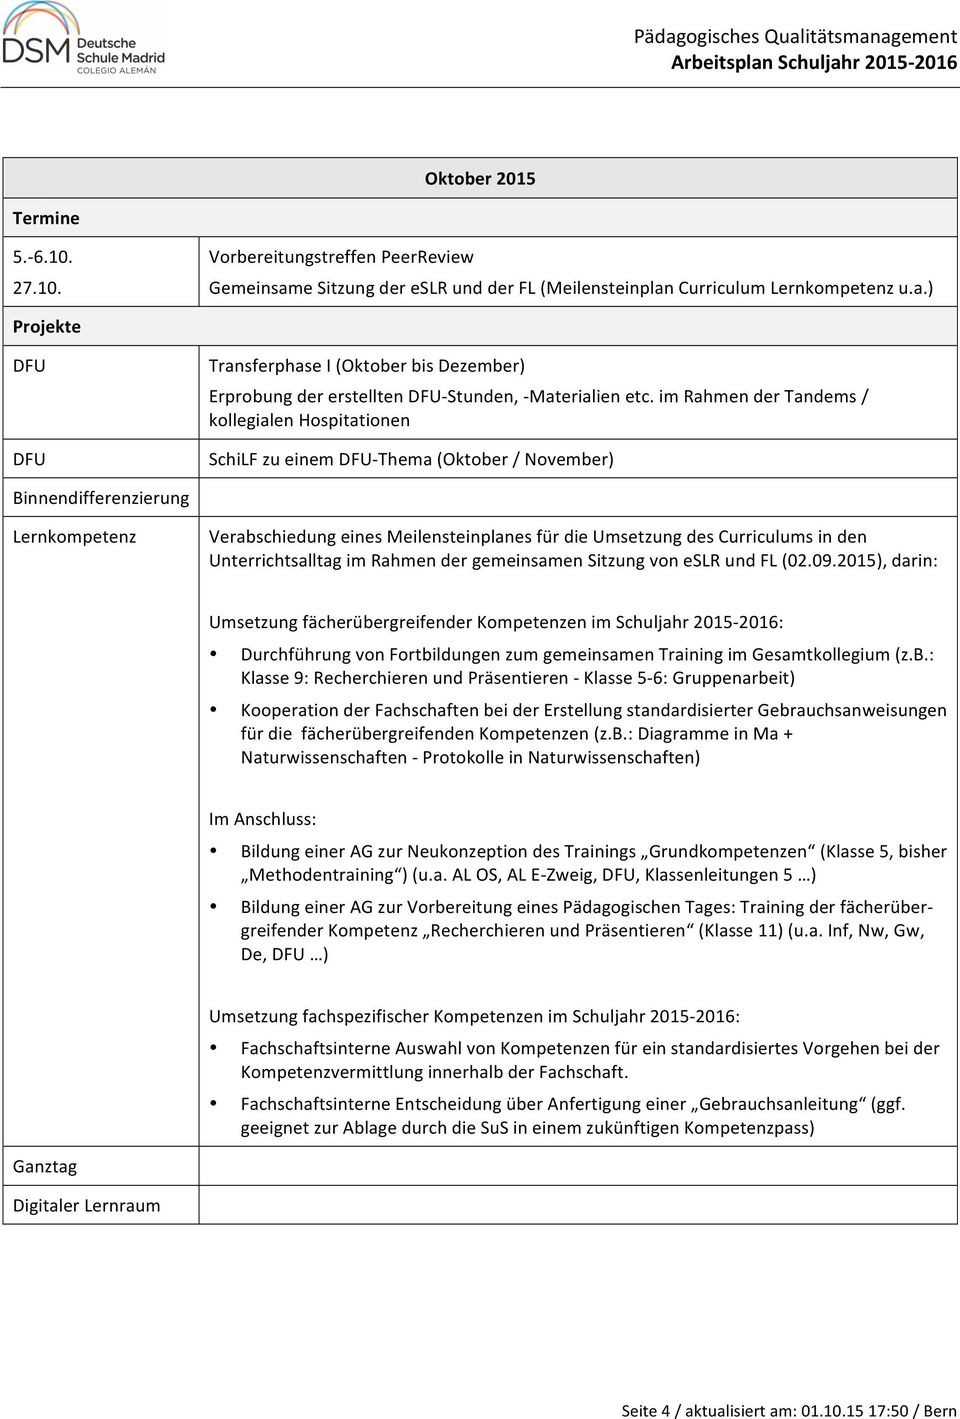 Rahmen der gemeinsamen Sitzung von eslr und FL (02.09.